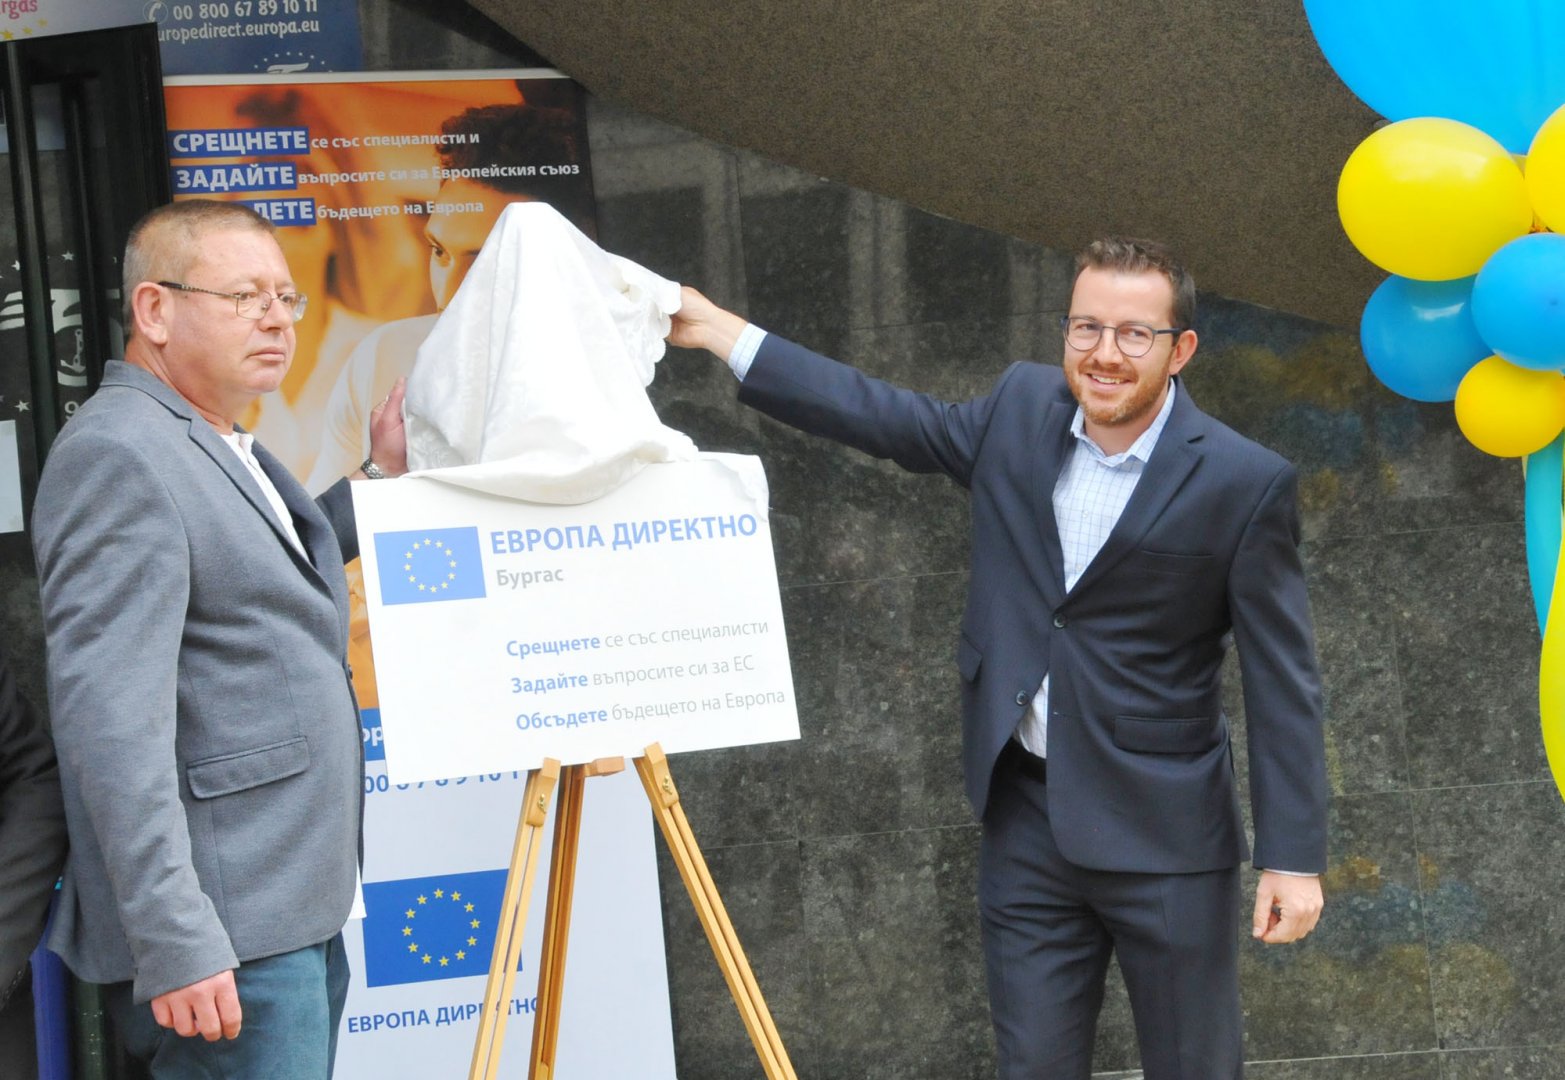 Радко Дренчев - БТПП и Бойко Благоев - ЕК, символично откриха табелата, която през следващите четири години ще стои на сградата, където се помещава Европа директно. Снимки Черноморие-бг